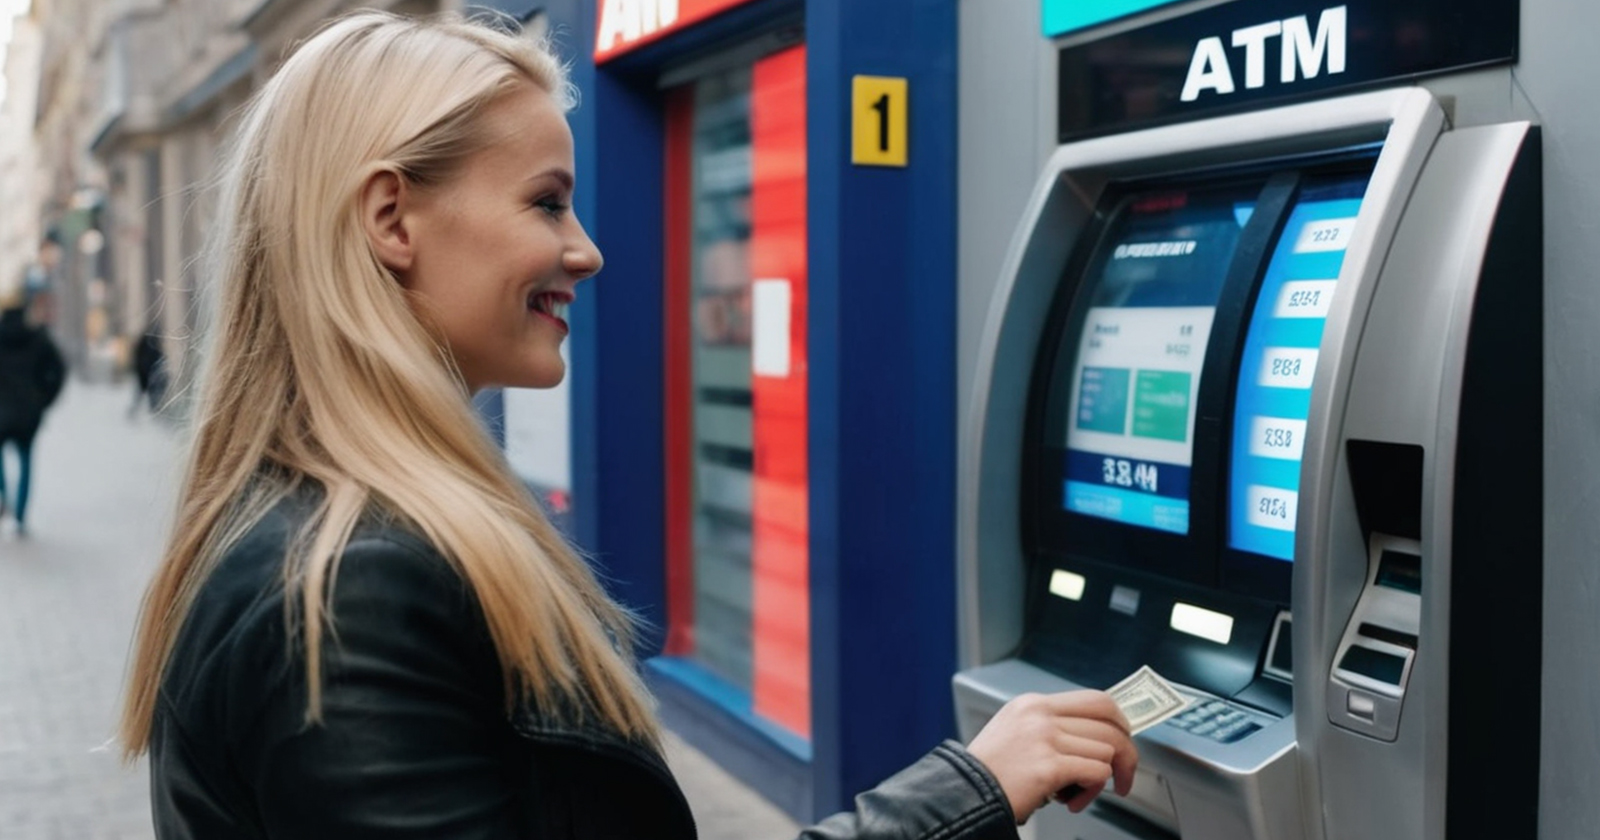 ATM banka sarışın kadın para çekme